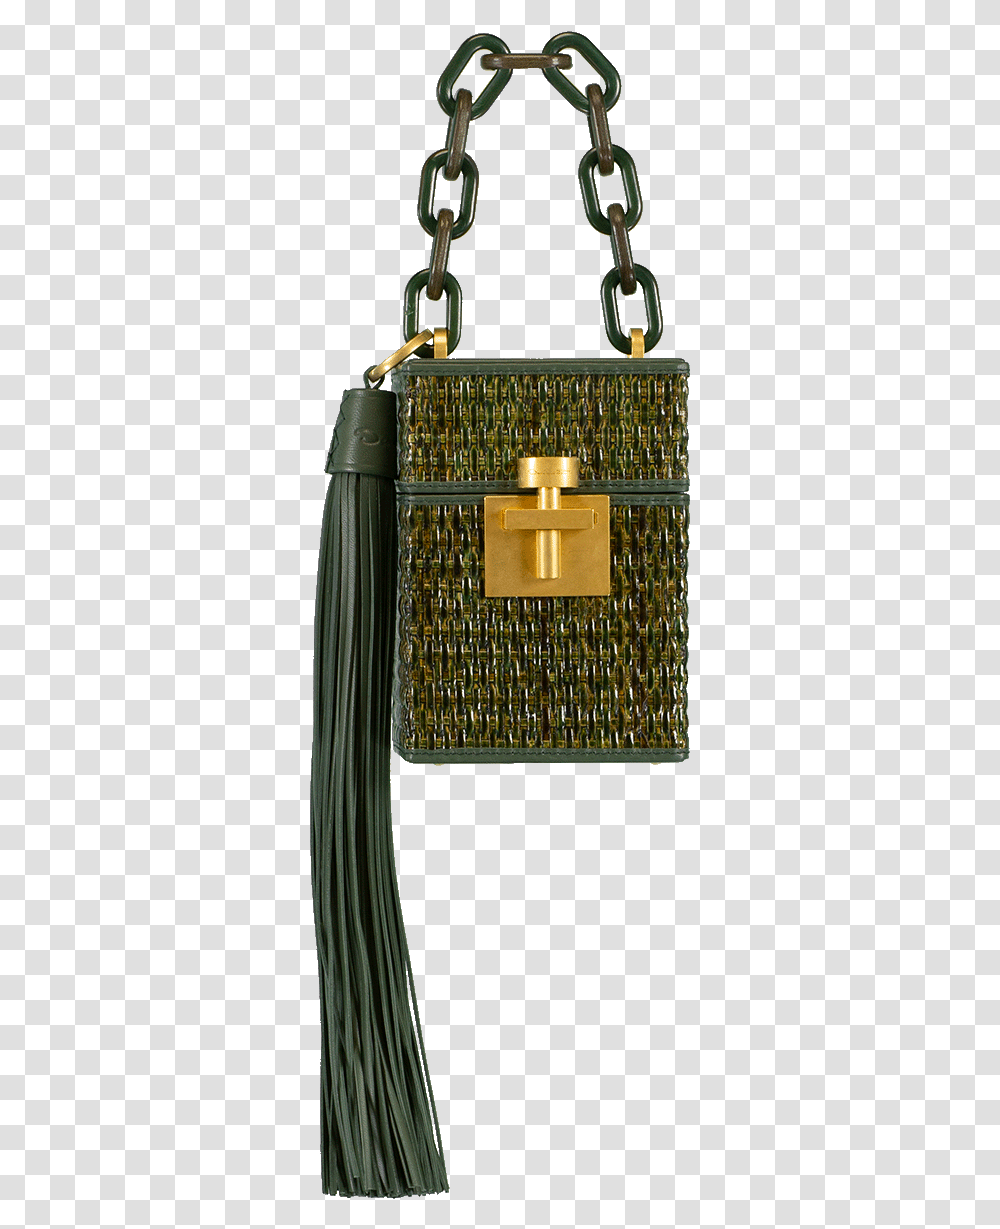 Shoulder Bag, Treasure, Luggage Transparent Png